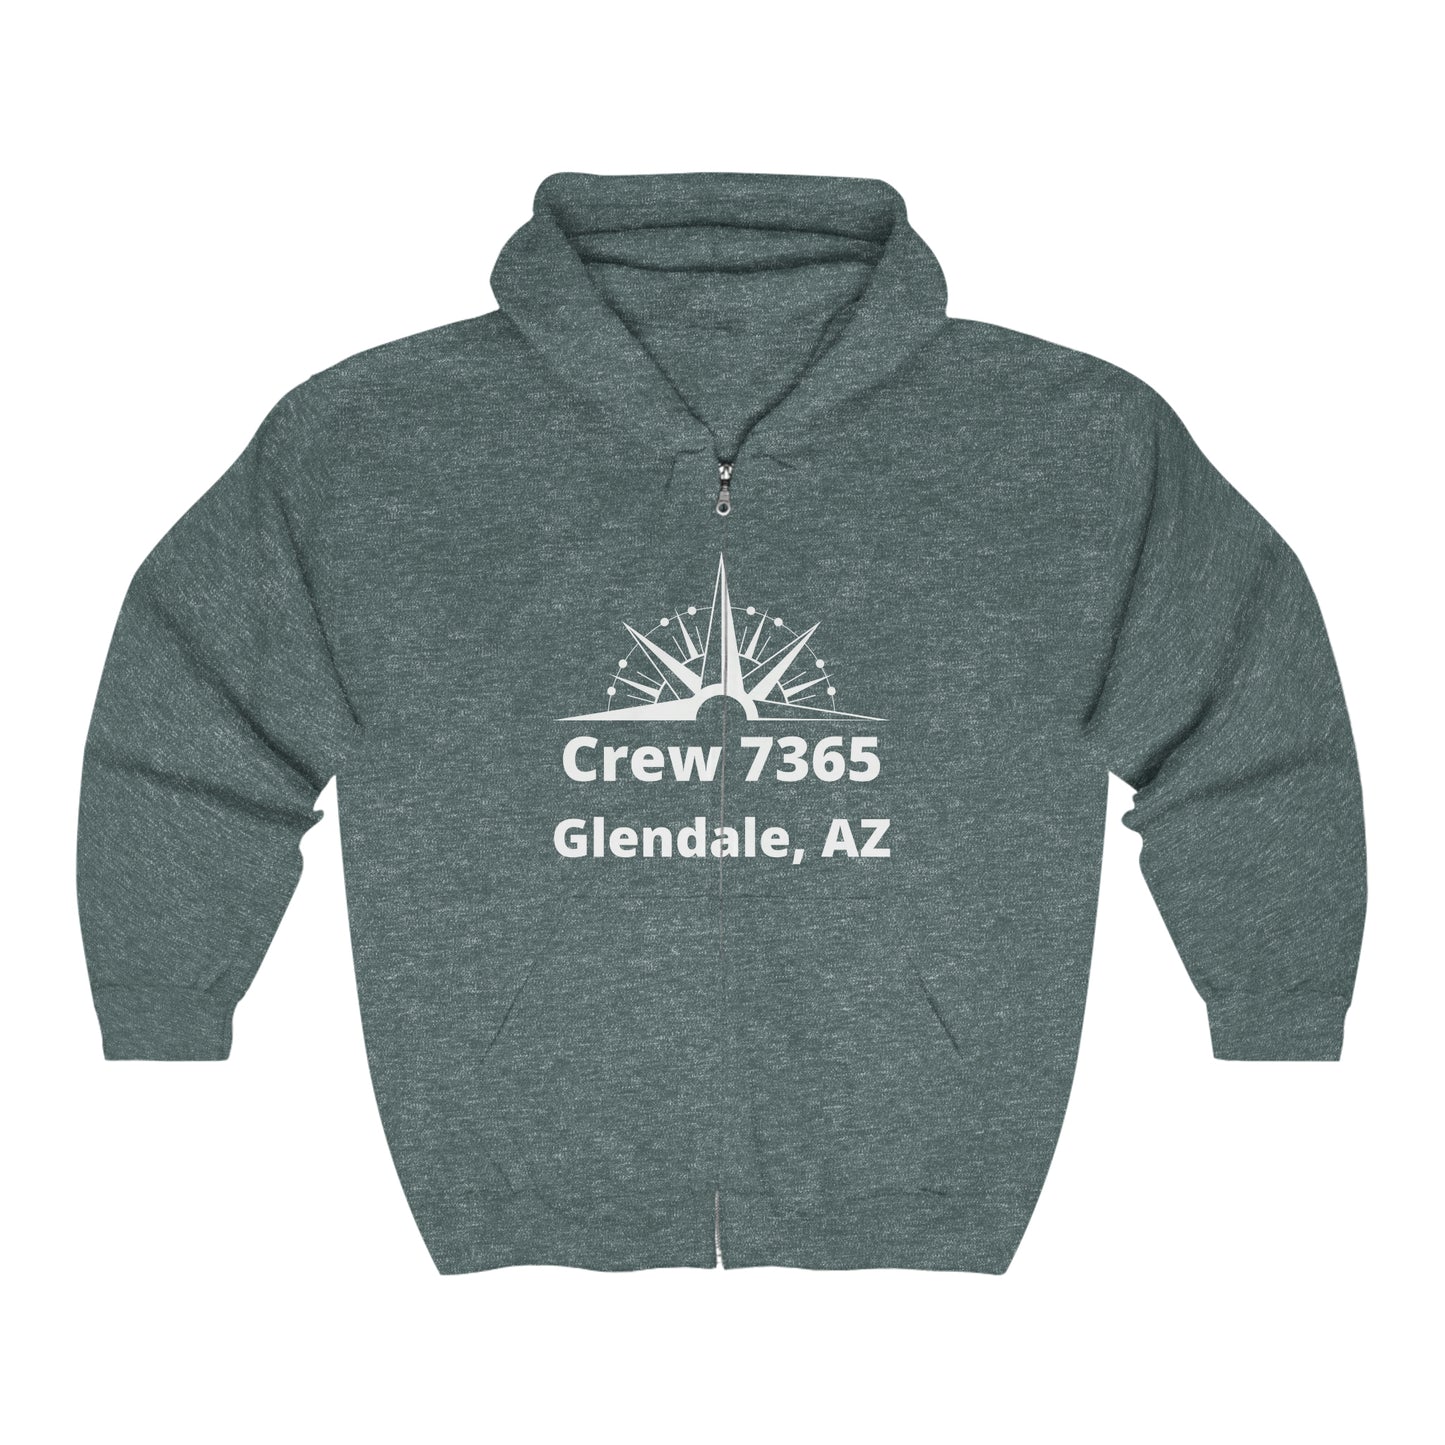 Crew 7365 - Full Zip Hooded Sweatshirt